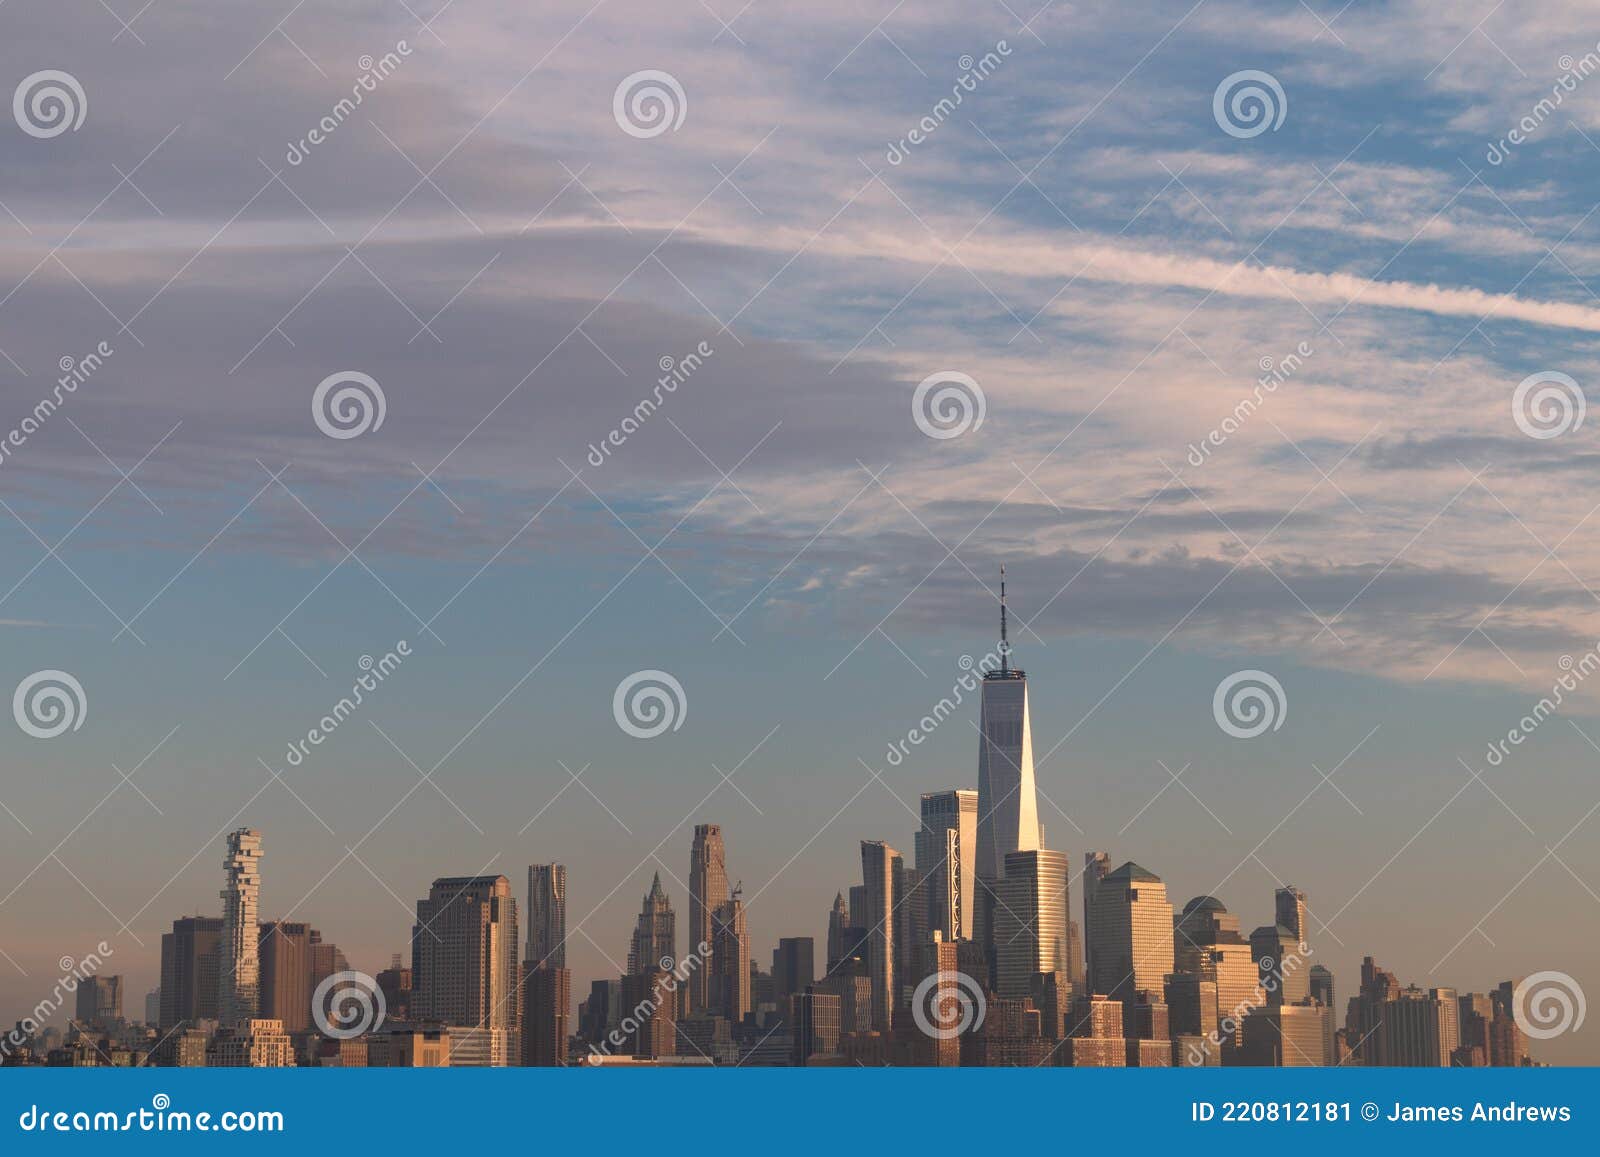 Tầm nhìn đẹp Manhattan là một trong những điểm hấp dẫn nổi tiếng của New York. Khung cảnh hoàn hảo với những tòa nhà cao mang đậm kiến trúc phương Tây và dòng sông Hudson phía dưới. Nếu bạn muốn đắm mình trong vẻ đẹp đó, hãy xem ngay hình ảnh liên quan!